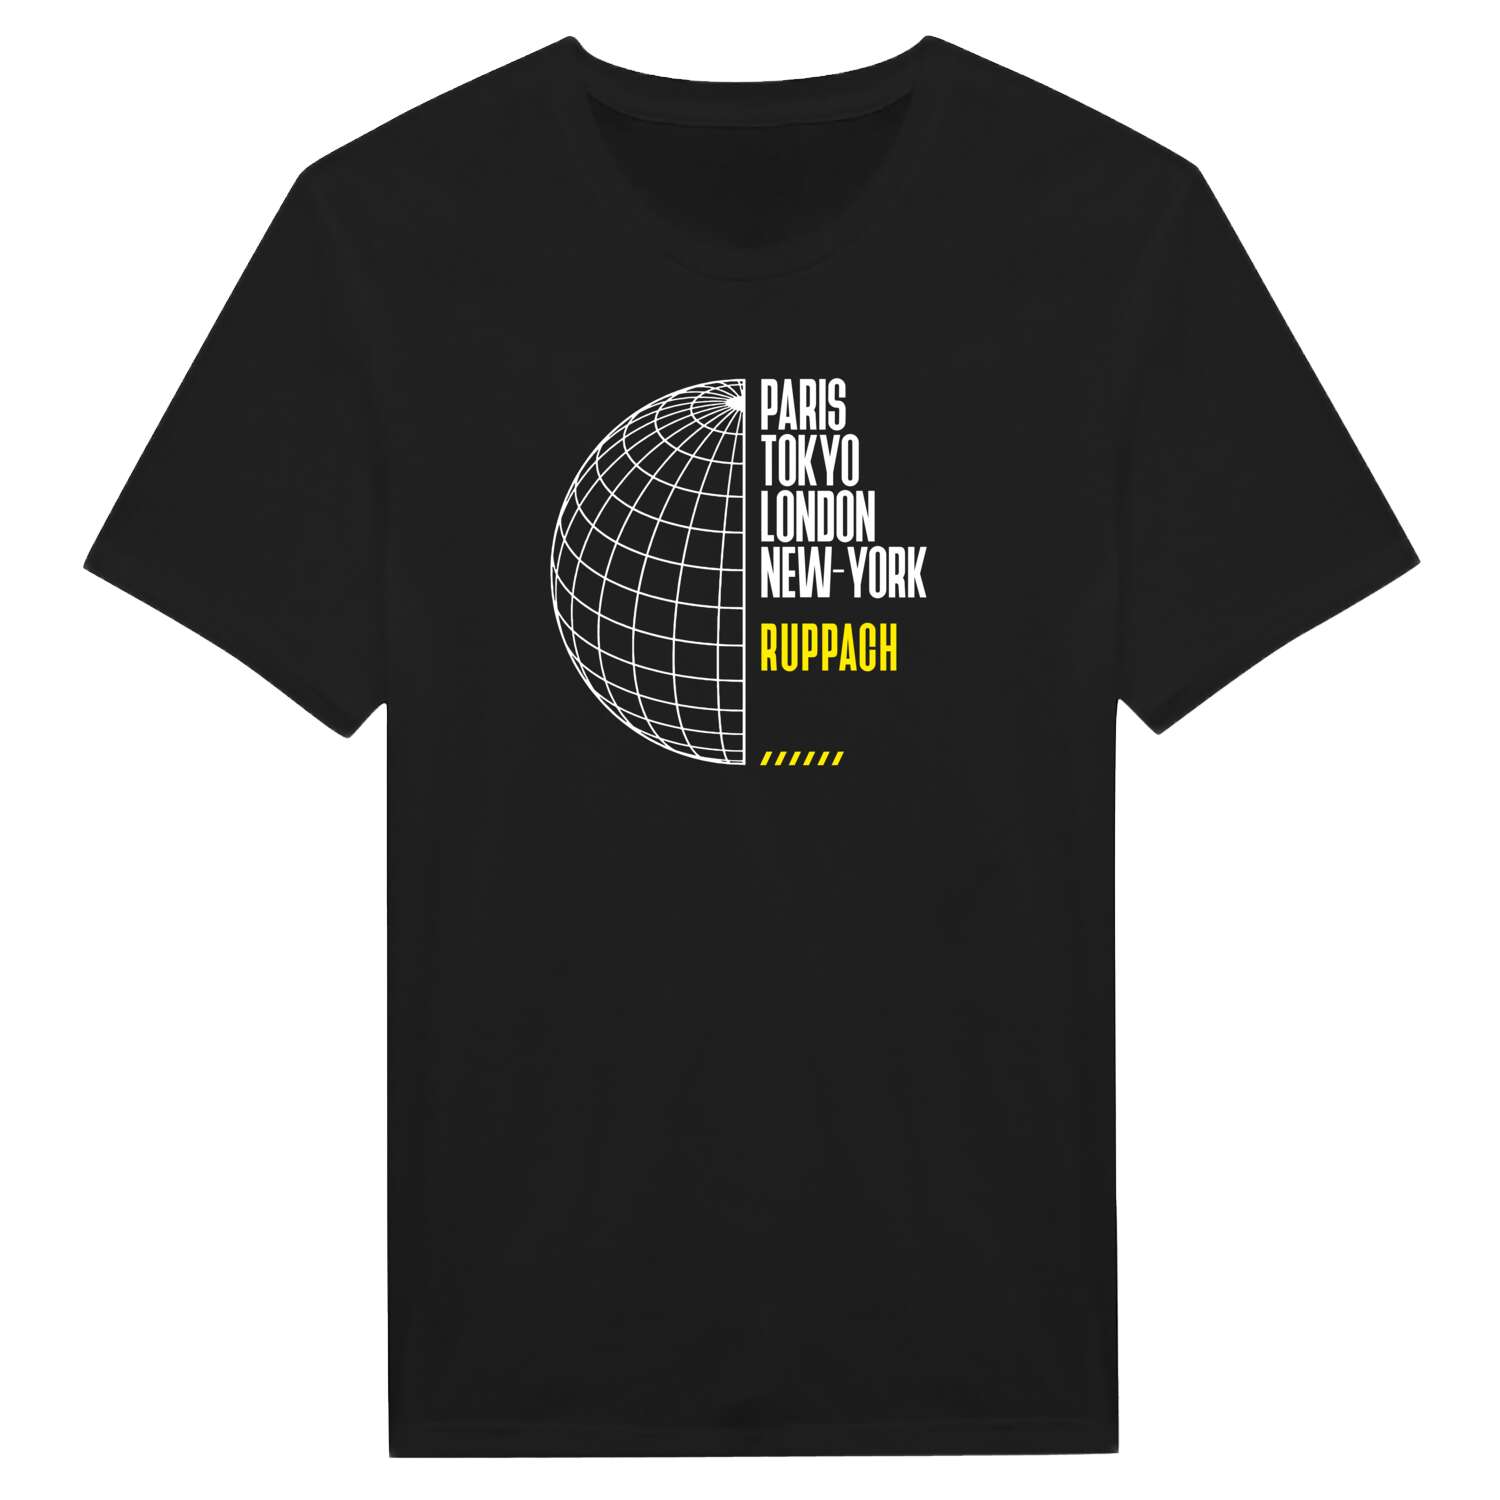 Ruppach T-Shirt »Paris Tokyo London«